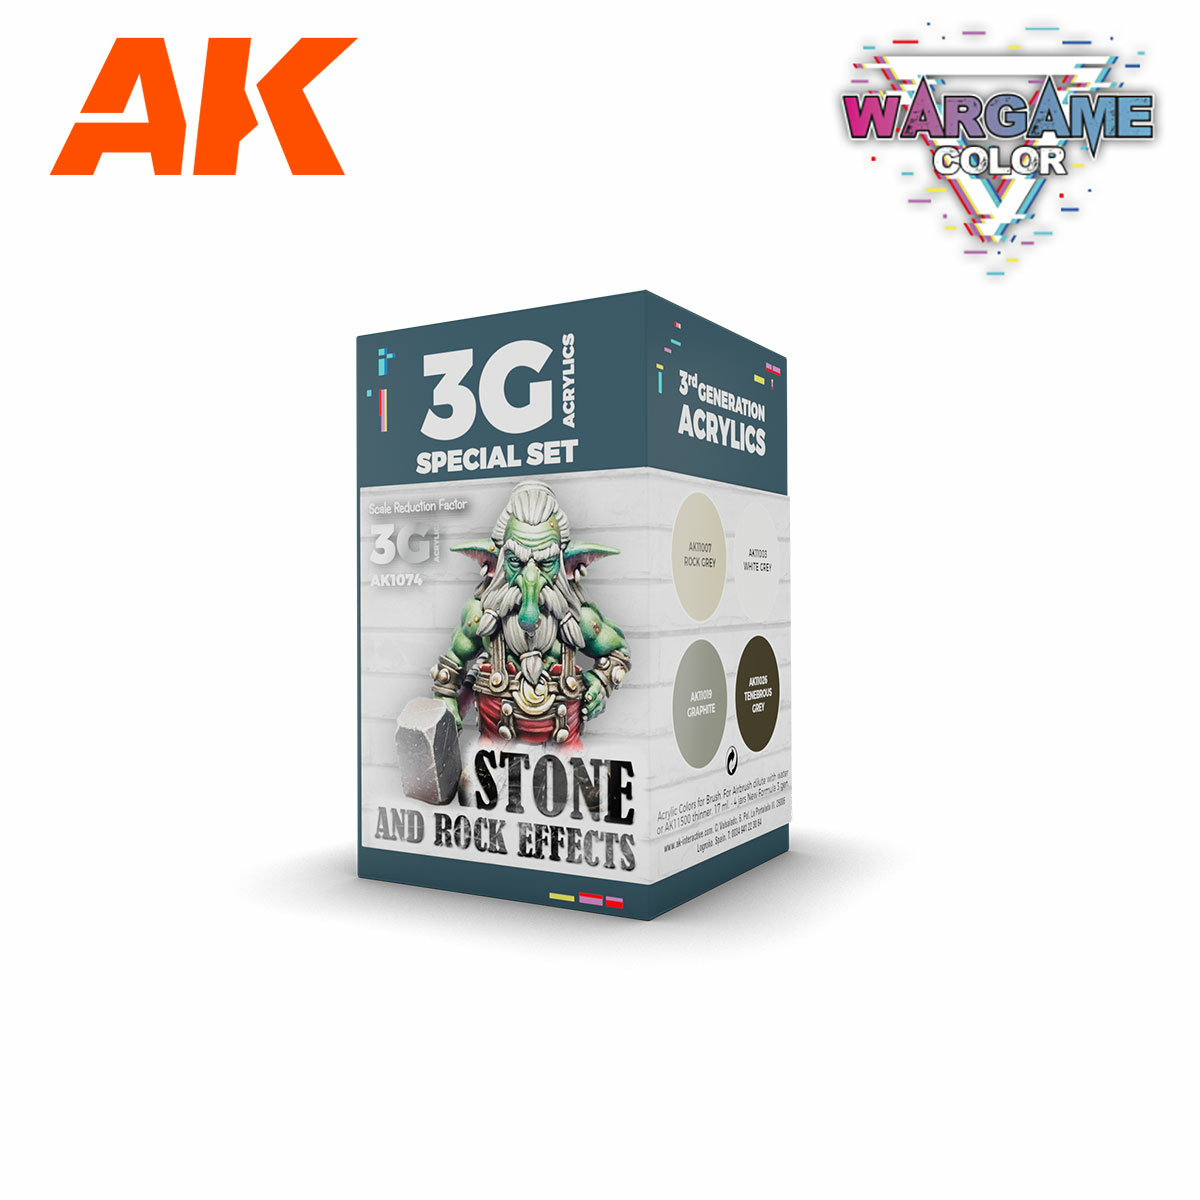 AK1074 AK Interactive Acrylic Paint Set 